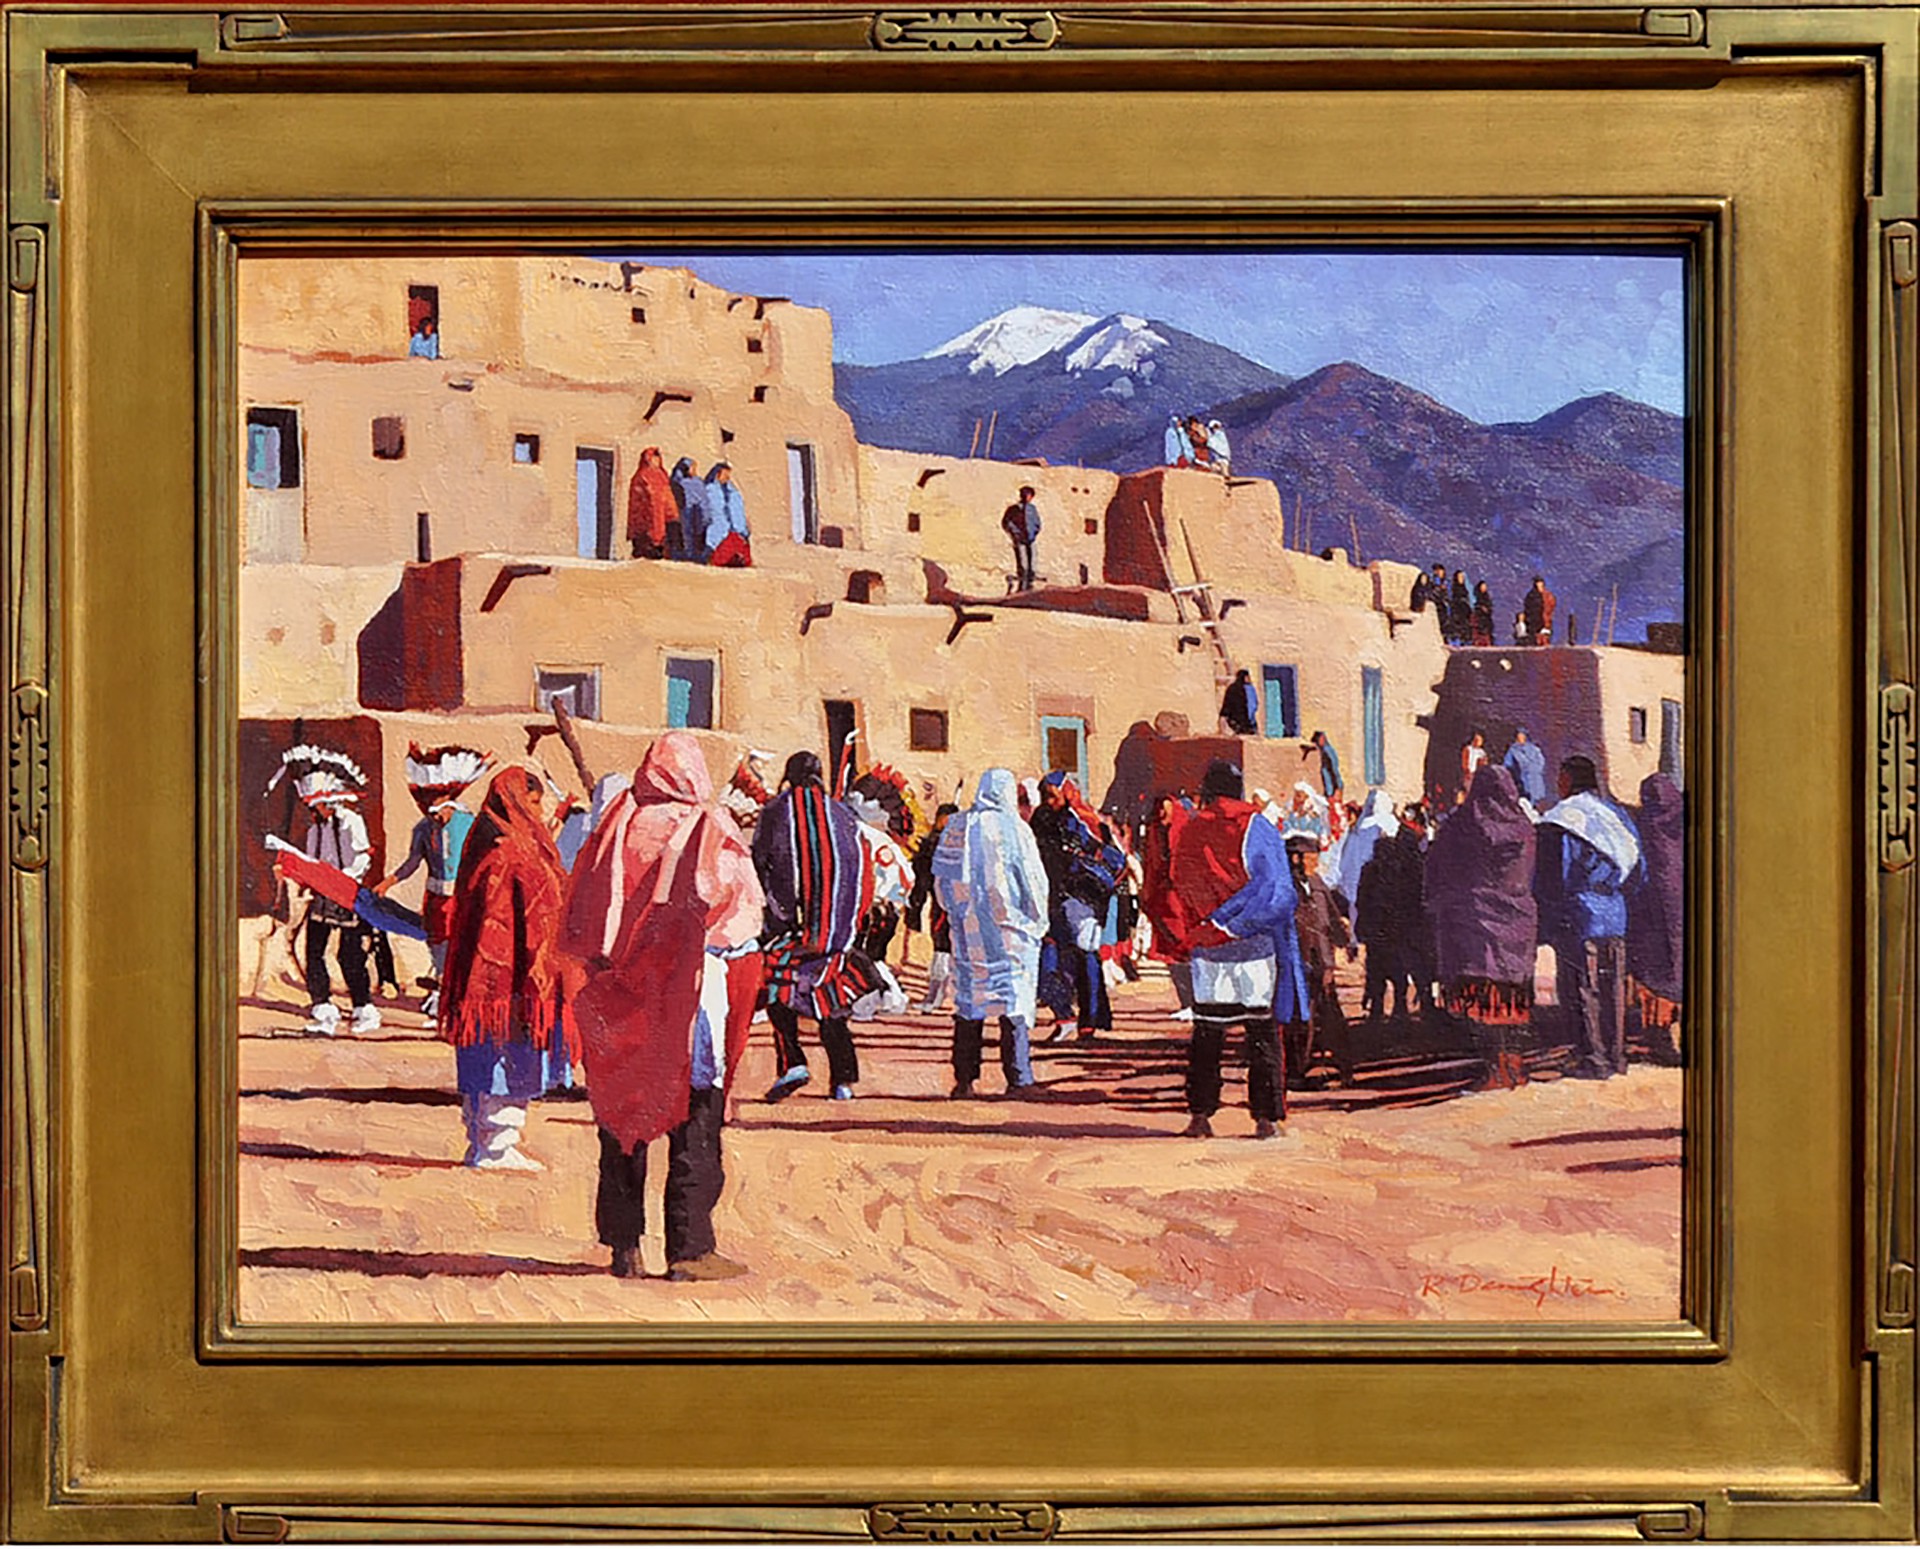 Pueblo Dance by Robert Daughters (1929-2013)